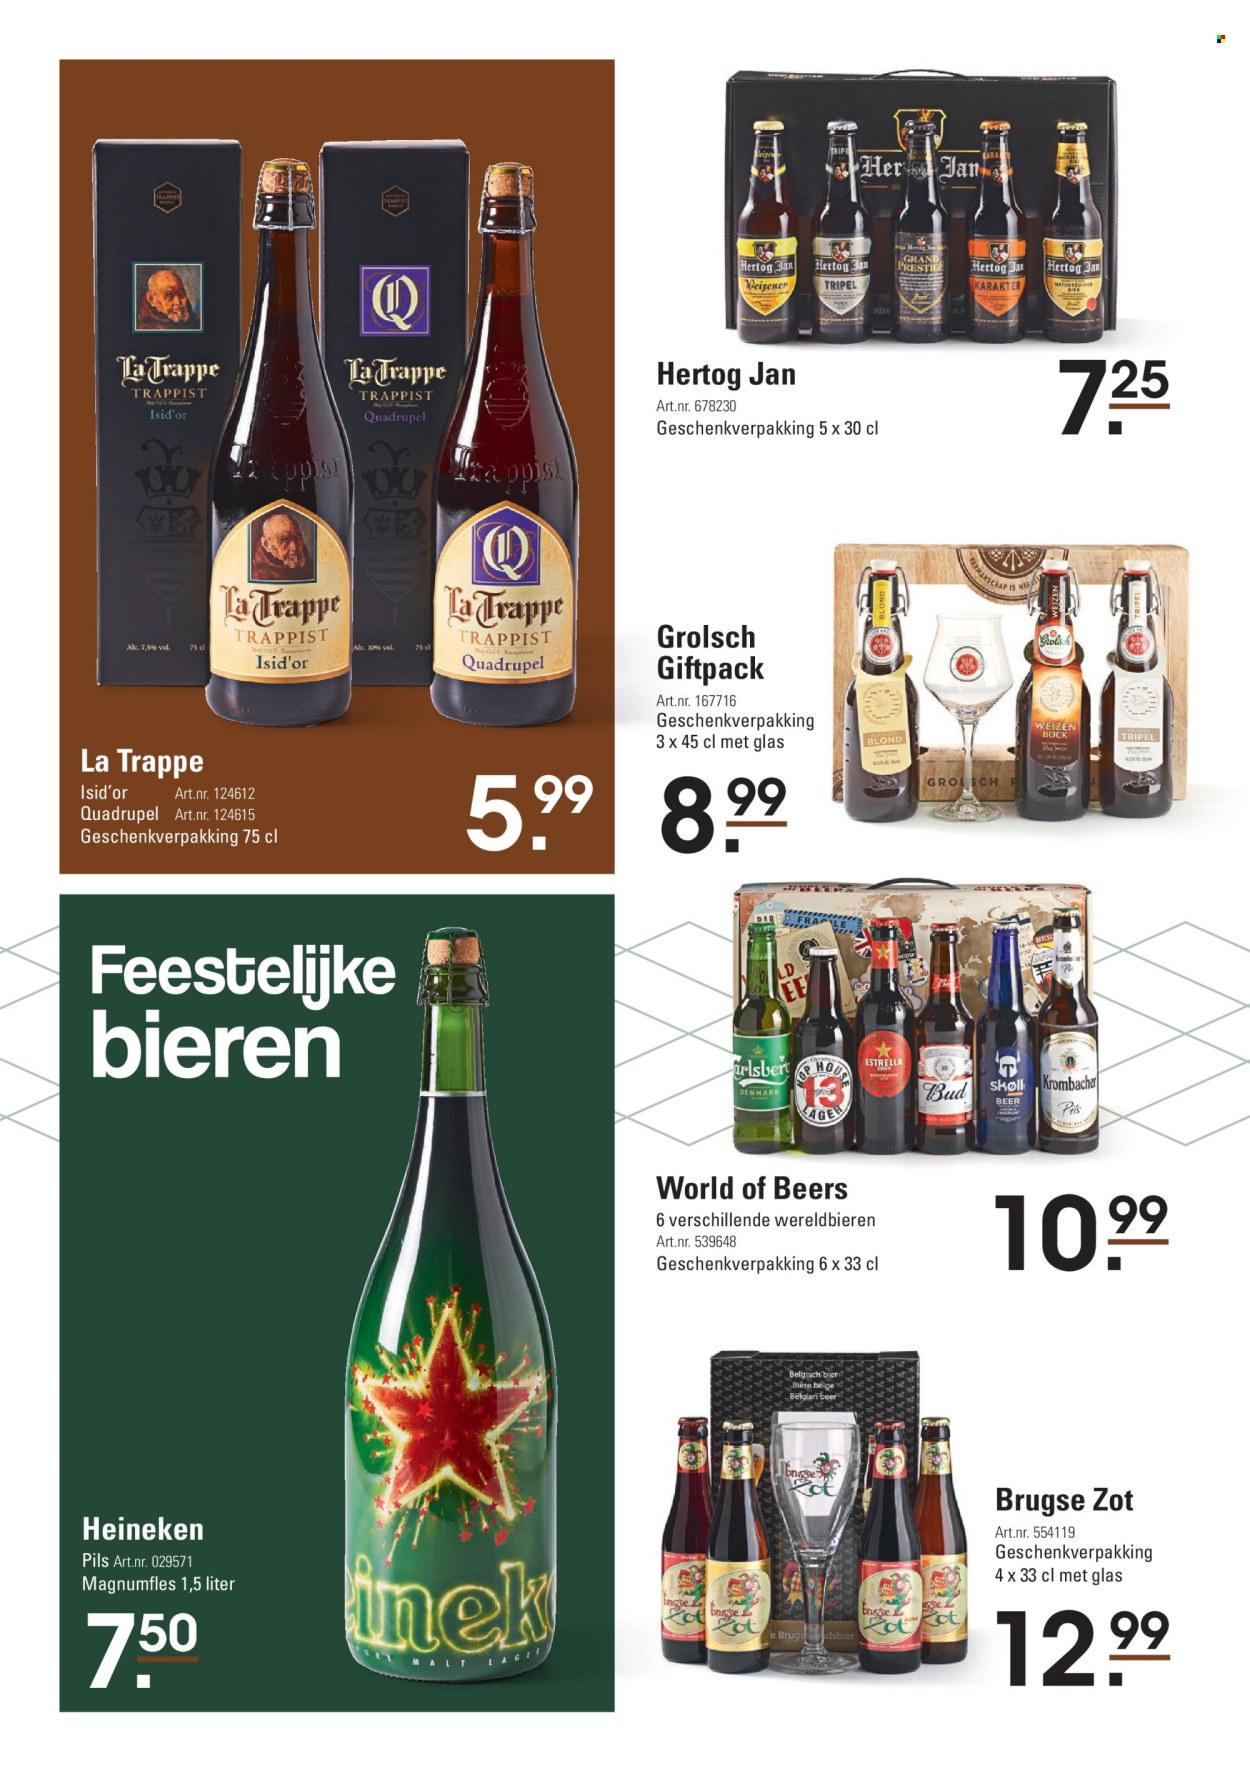 thumbnail - Sligro-aanbieding - 25-10-2022 - 31-12-2022 -  producten in de aanbieding - Heineken, Hertog Jan, Grolsch, bier, glazen. Pagina 14.